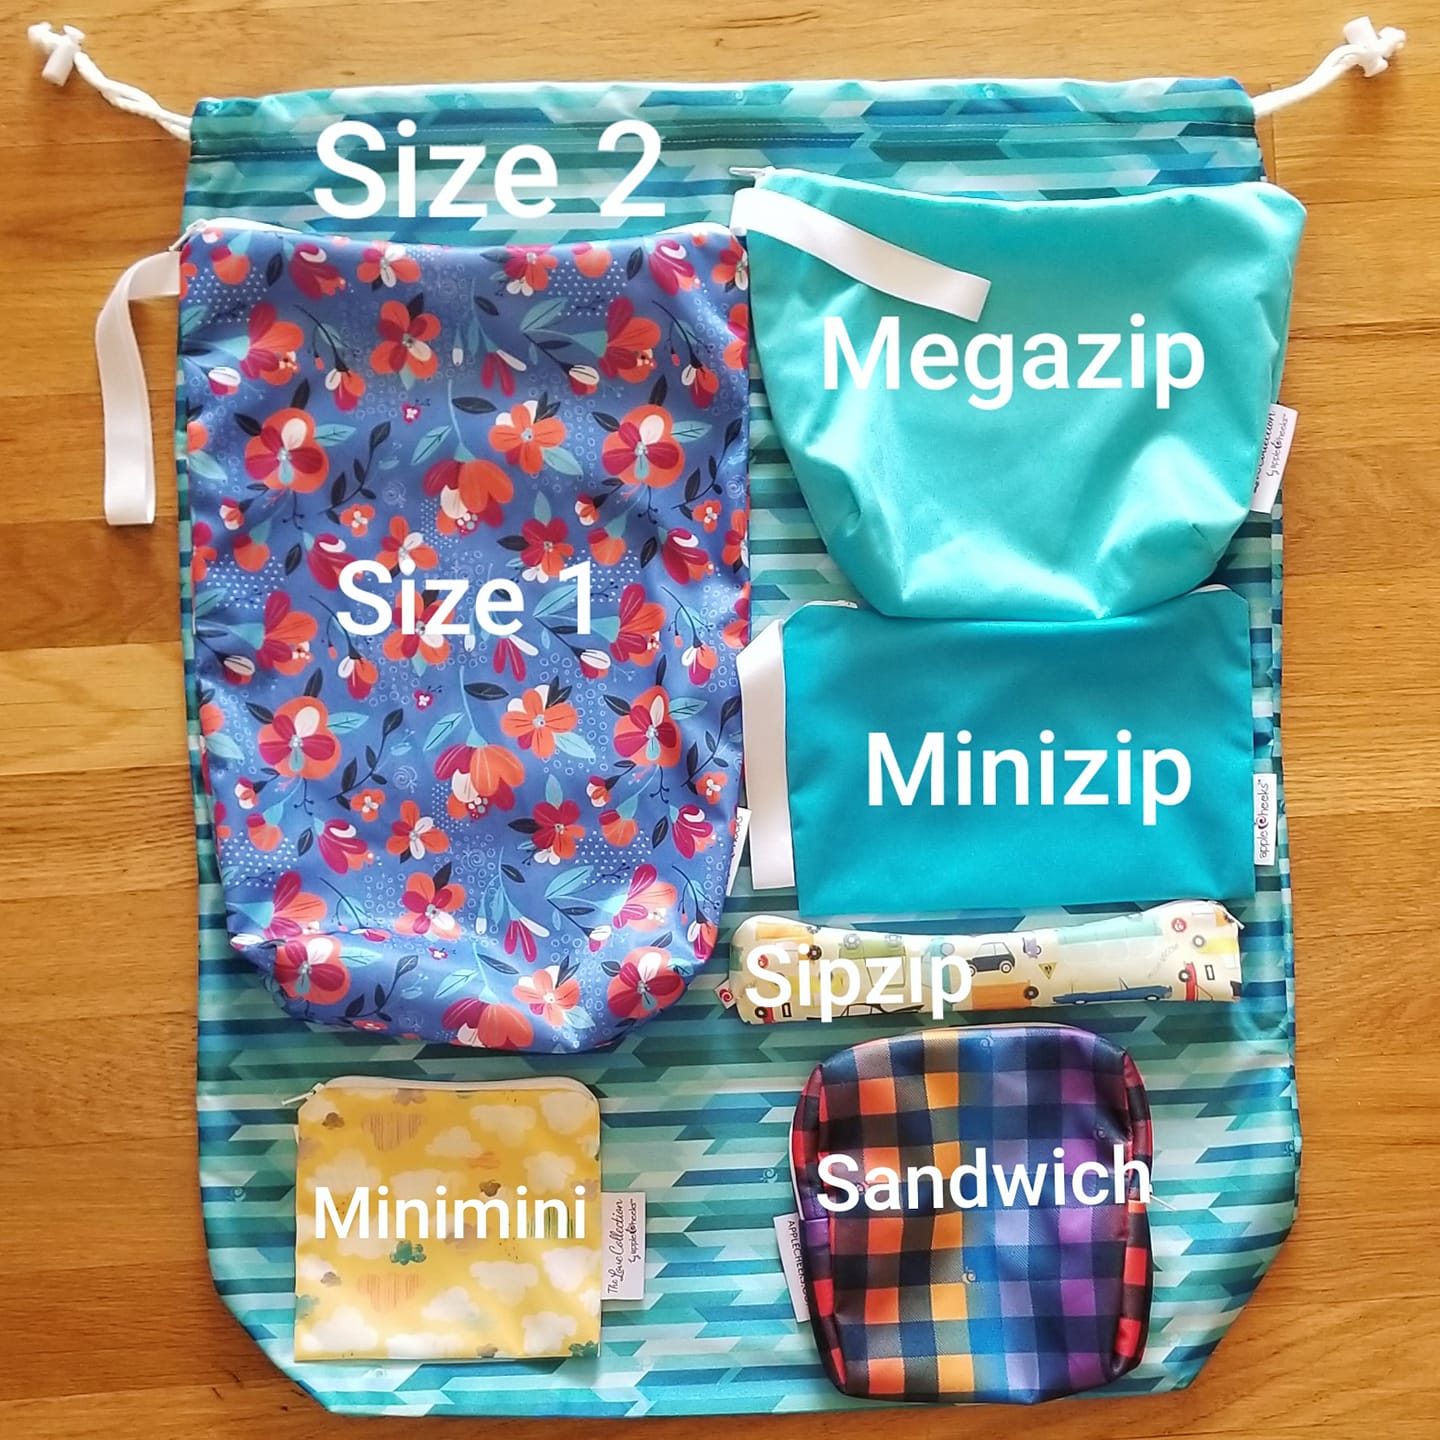 Storage Sac Size 2 (Zipper) - NEW